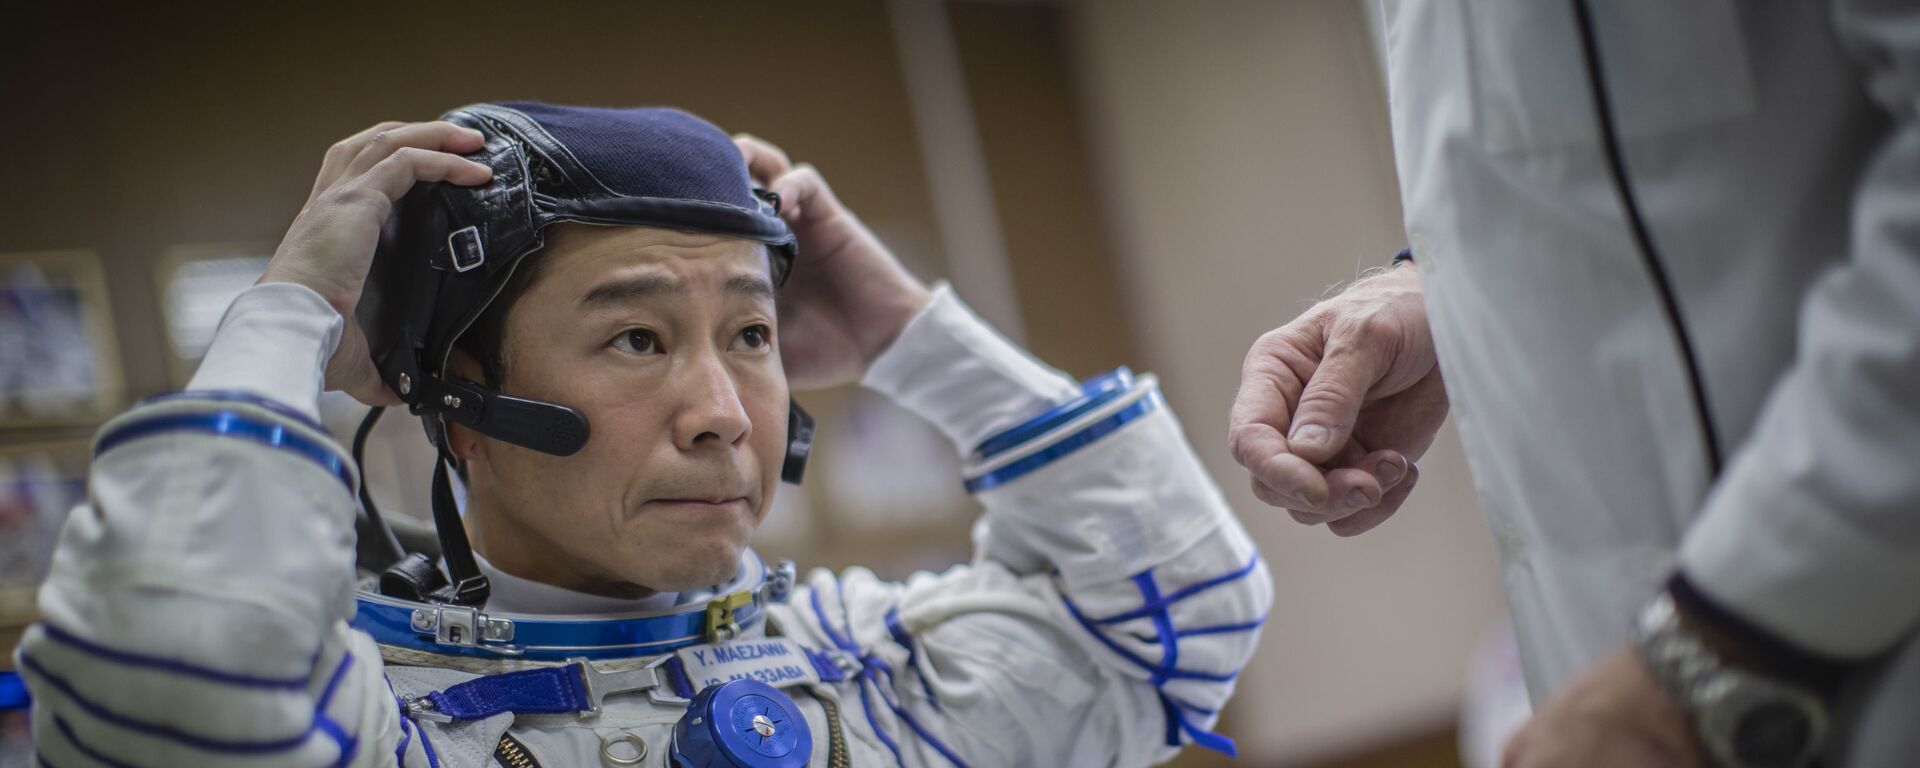 Участник будущего космического полета Юсаку Маэдзава примеряет скафандр Сокол  - Sputnik 日本, 1920, 13.11.2021